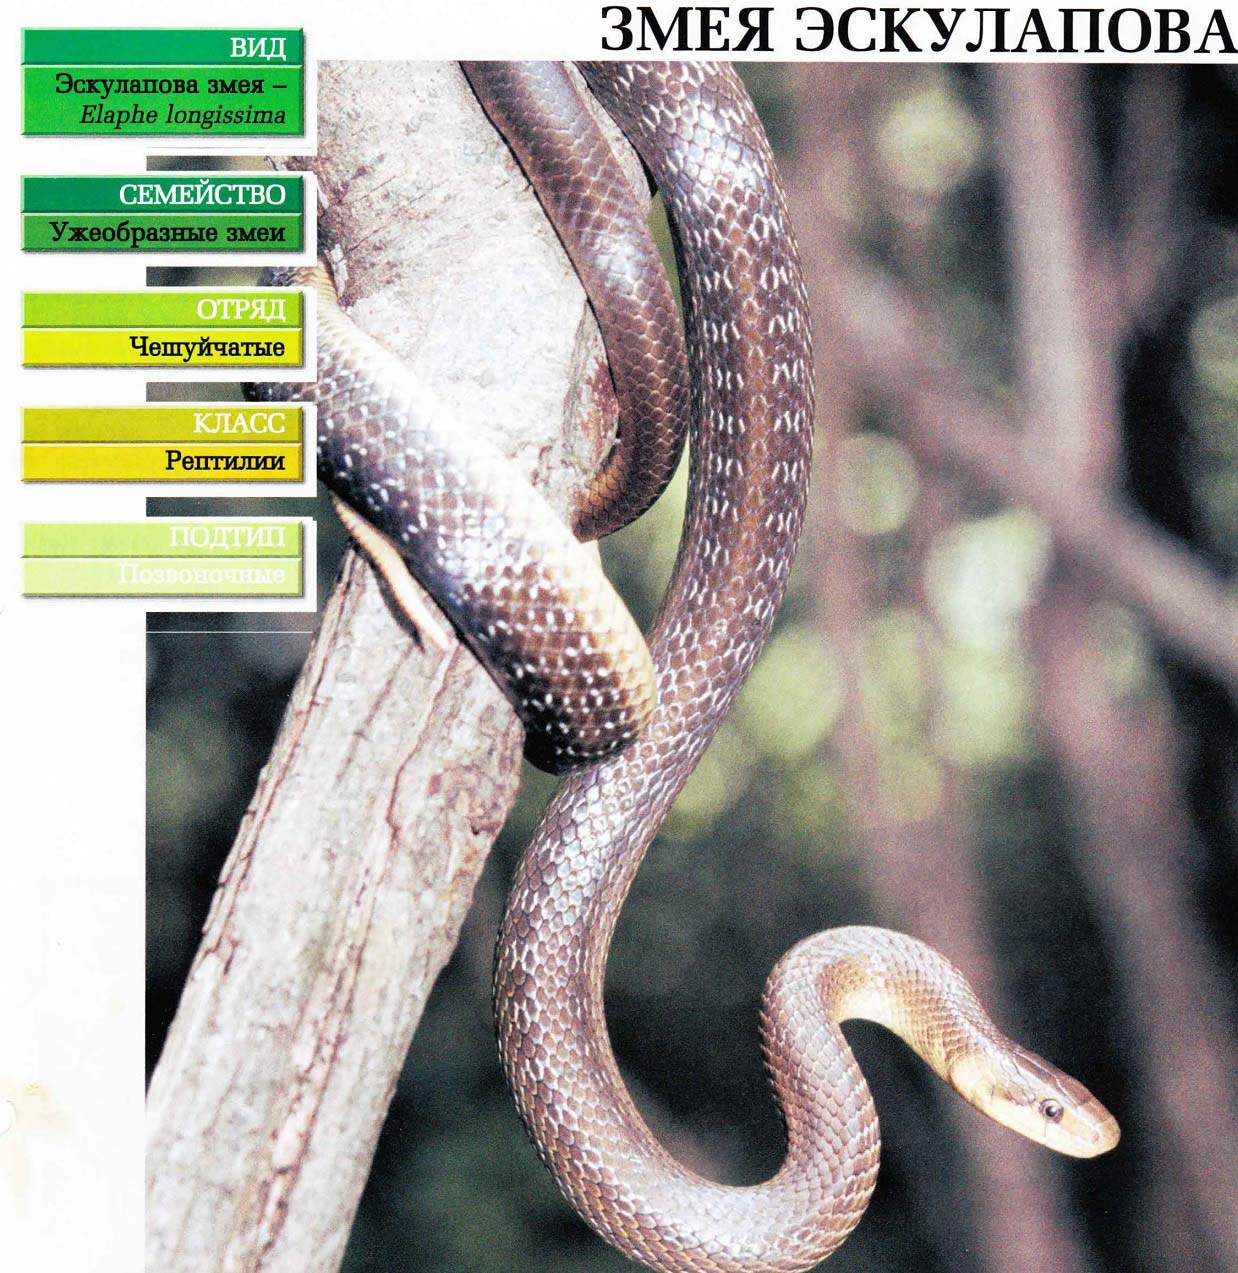 Систематика (научная классификация) змеи эскулаповой. Elaphe longissima.